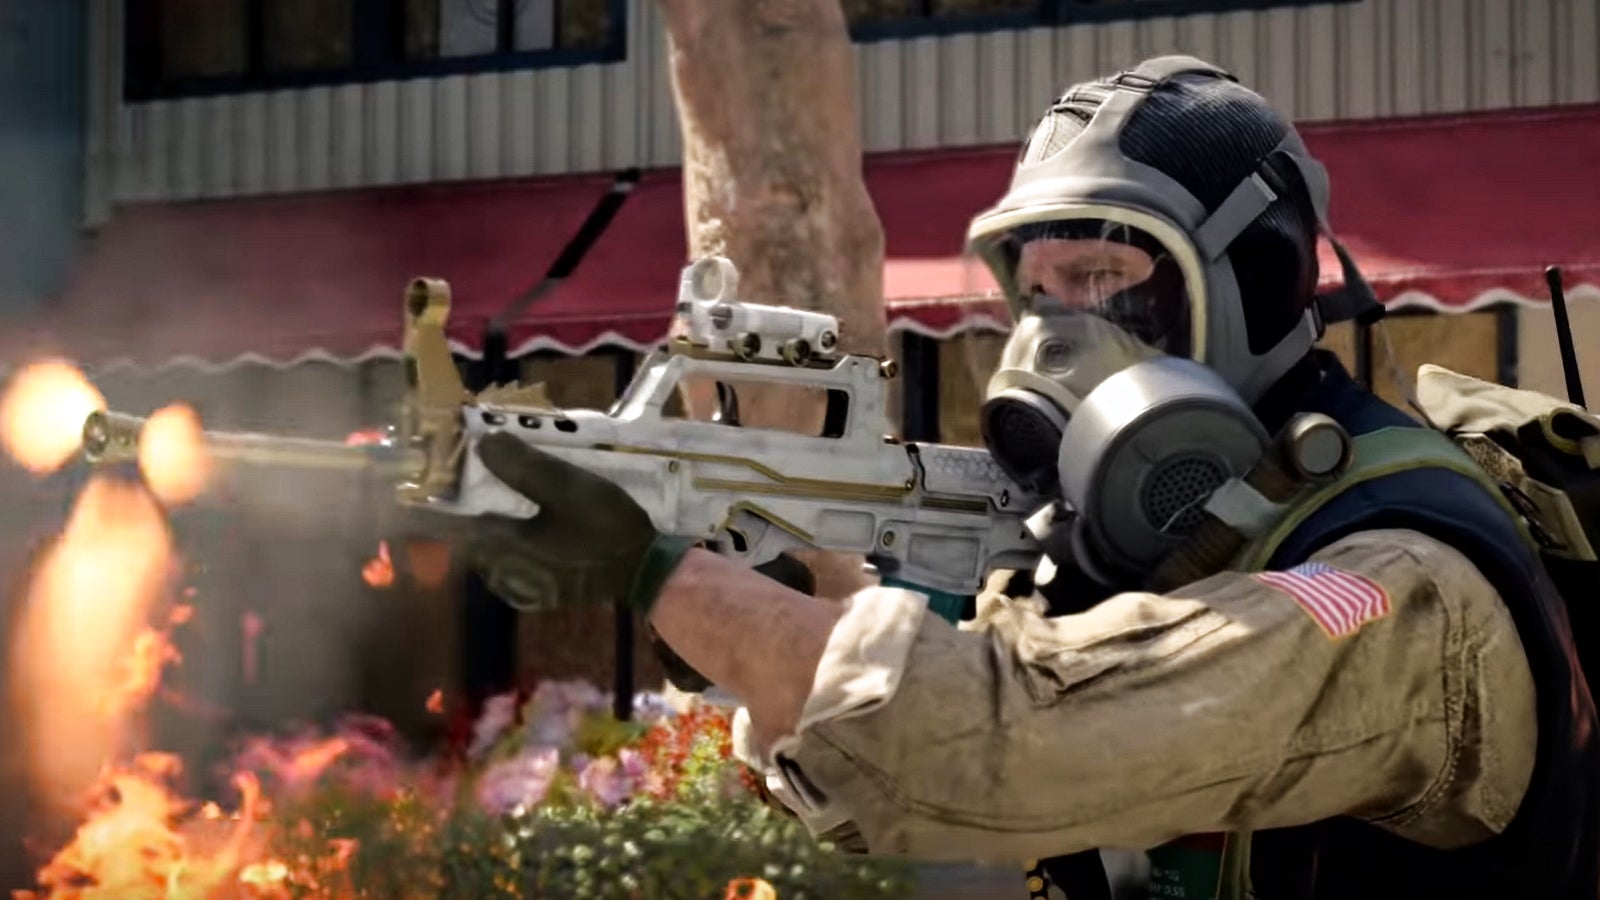 Bilder zu Call of Duty: Black Ops Cold War erhält überraschendes Update - Das steckt drin